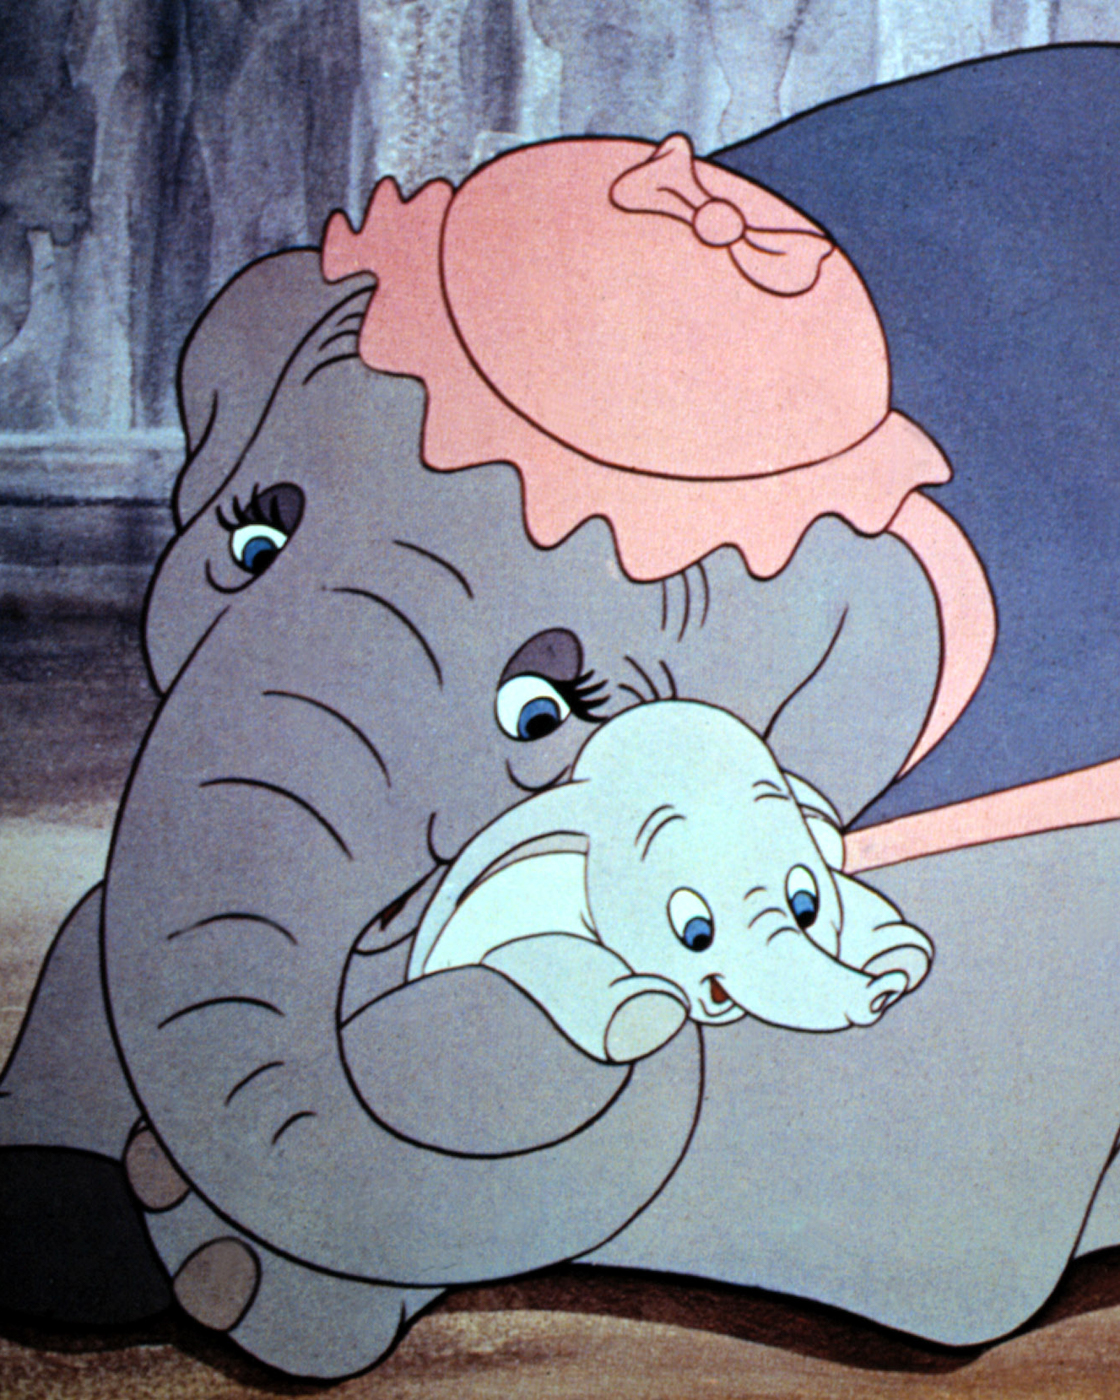 A still from <i>Dumbo</i>, 1941